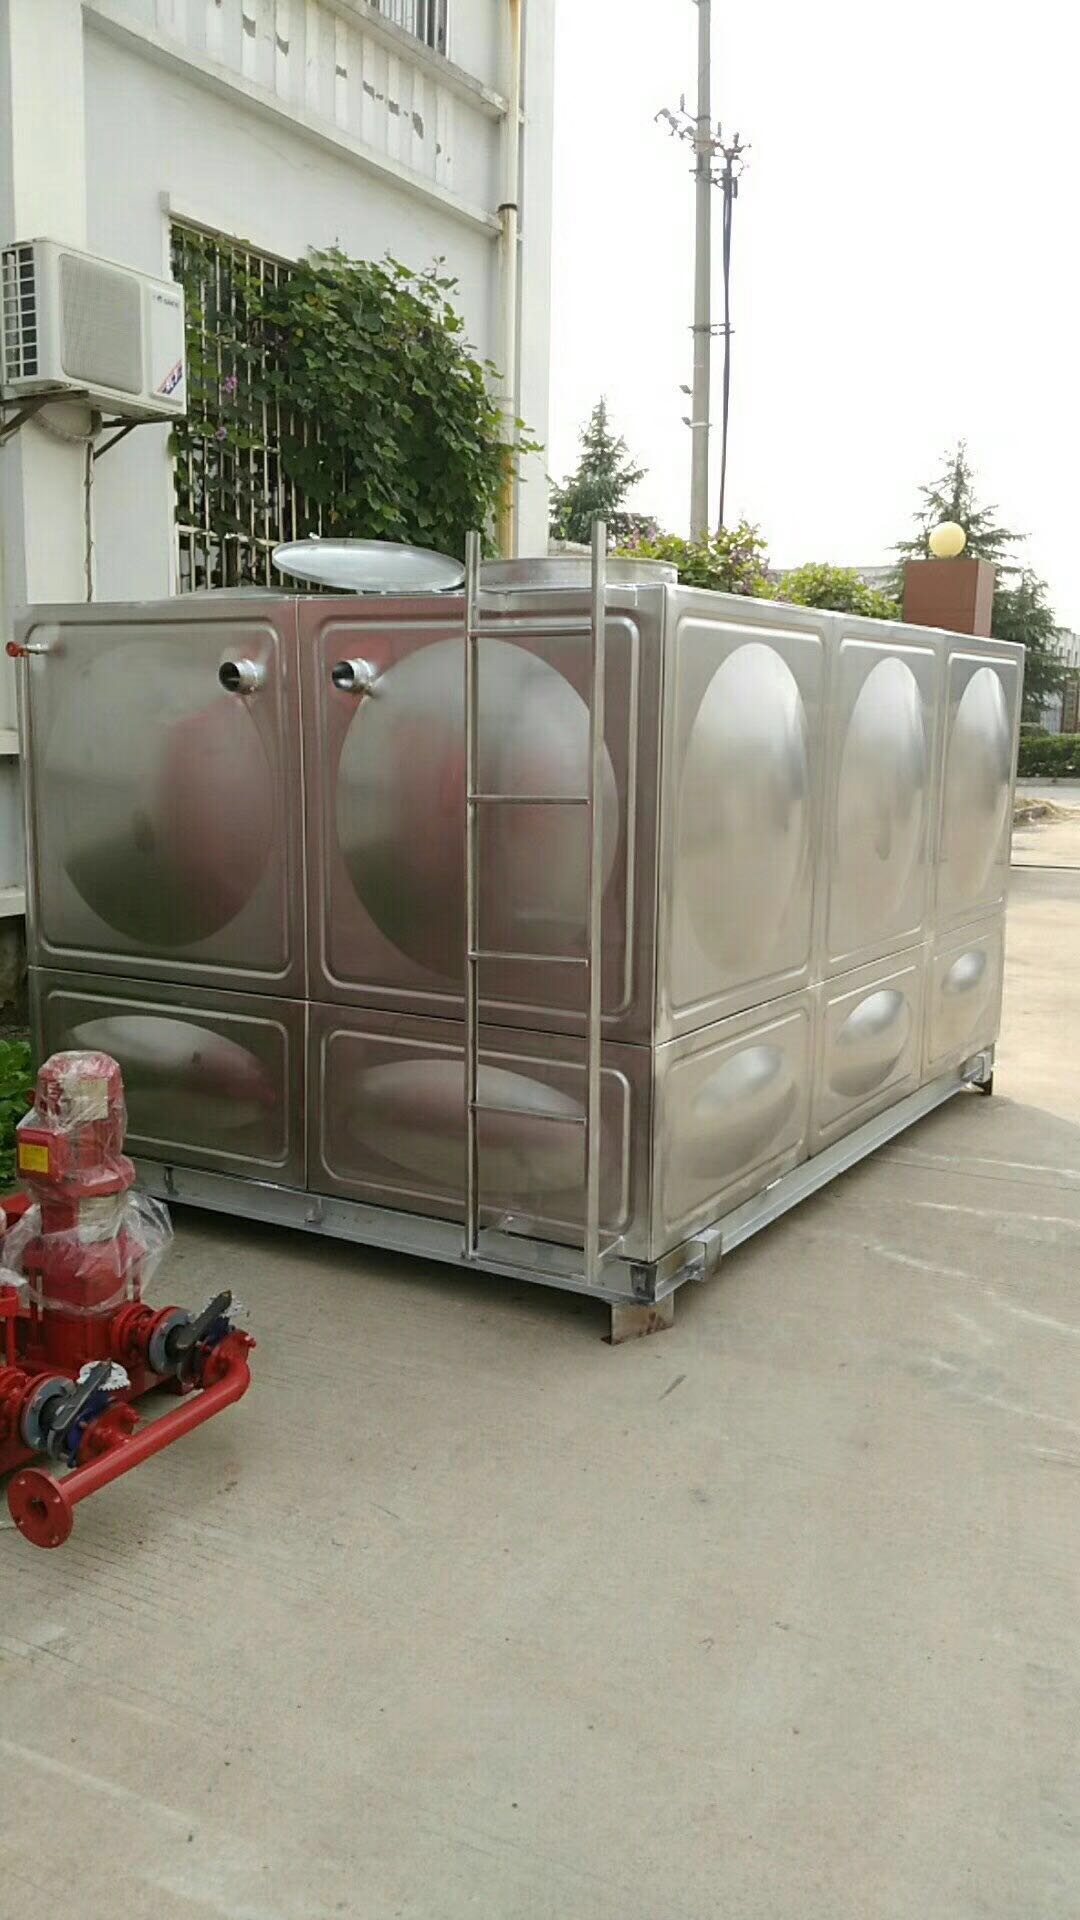 江西宜春不锈钢方形保温水箱厂家 消防水箱描述 组装式方形生活水箱价格 生活保温水箱定做 方形水箱 生活水箱